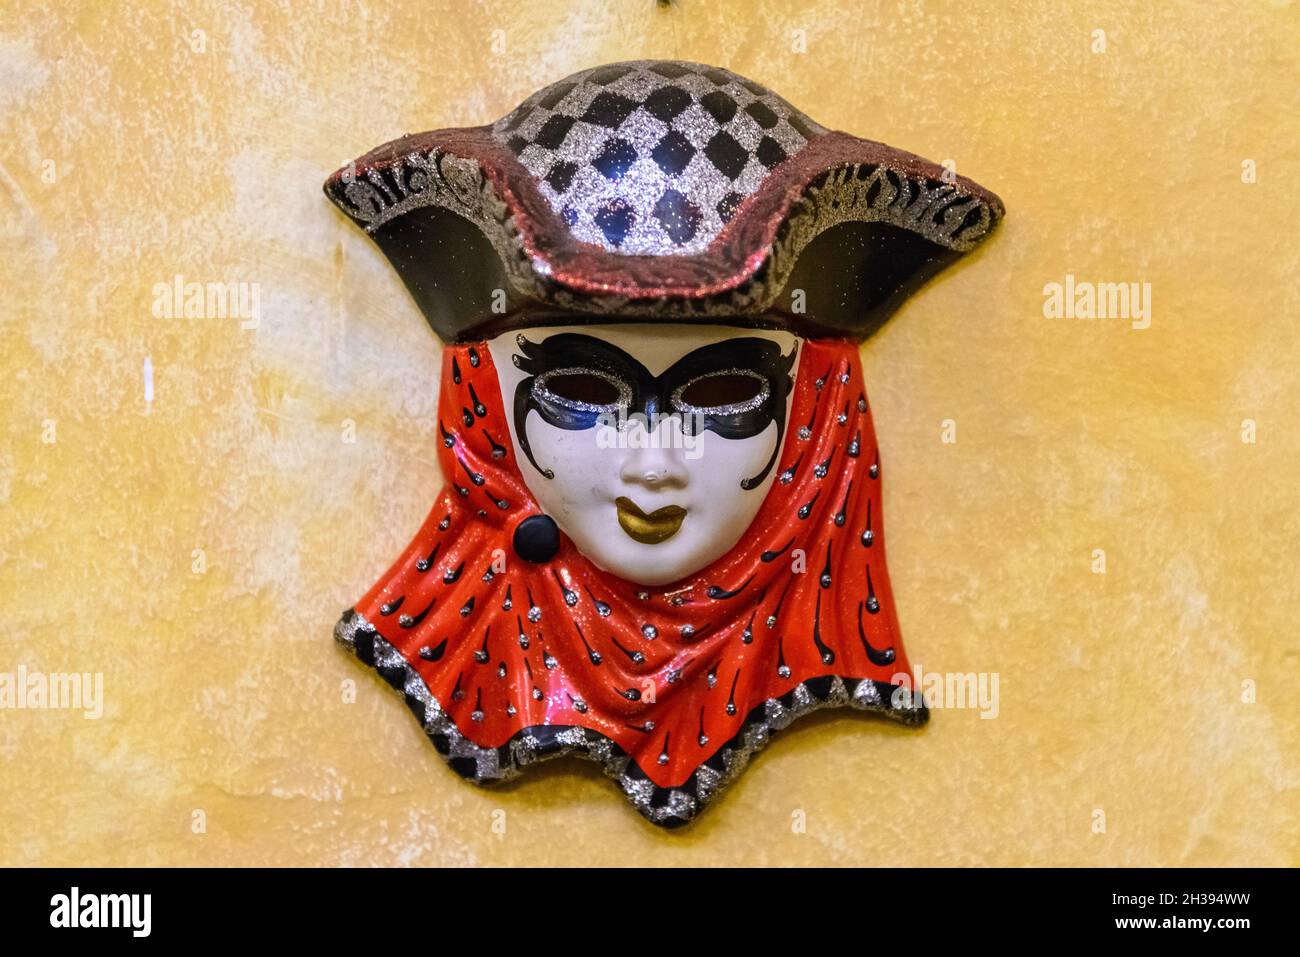 Le masque artistique de style européen décore le mur.Cuzco, Pérou. Banque D'Images